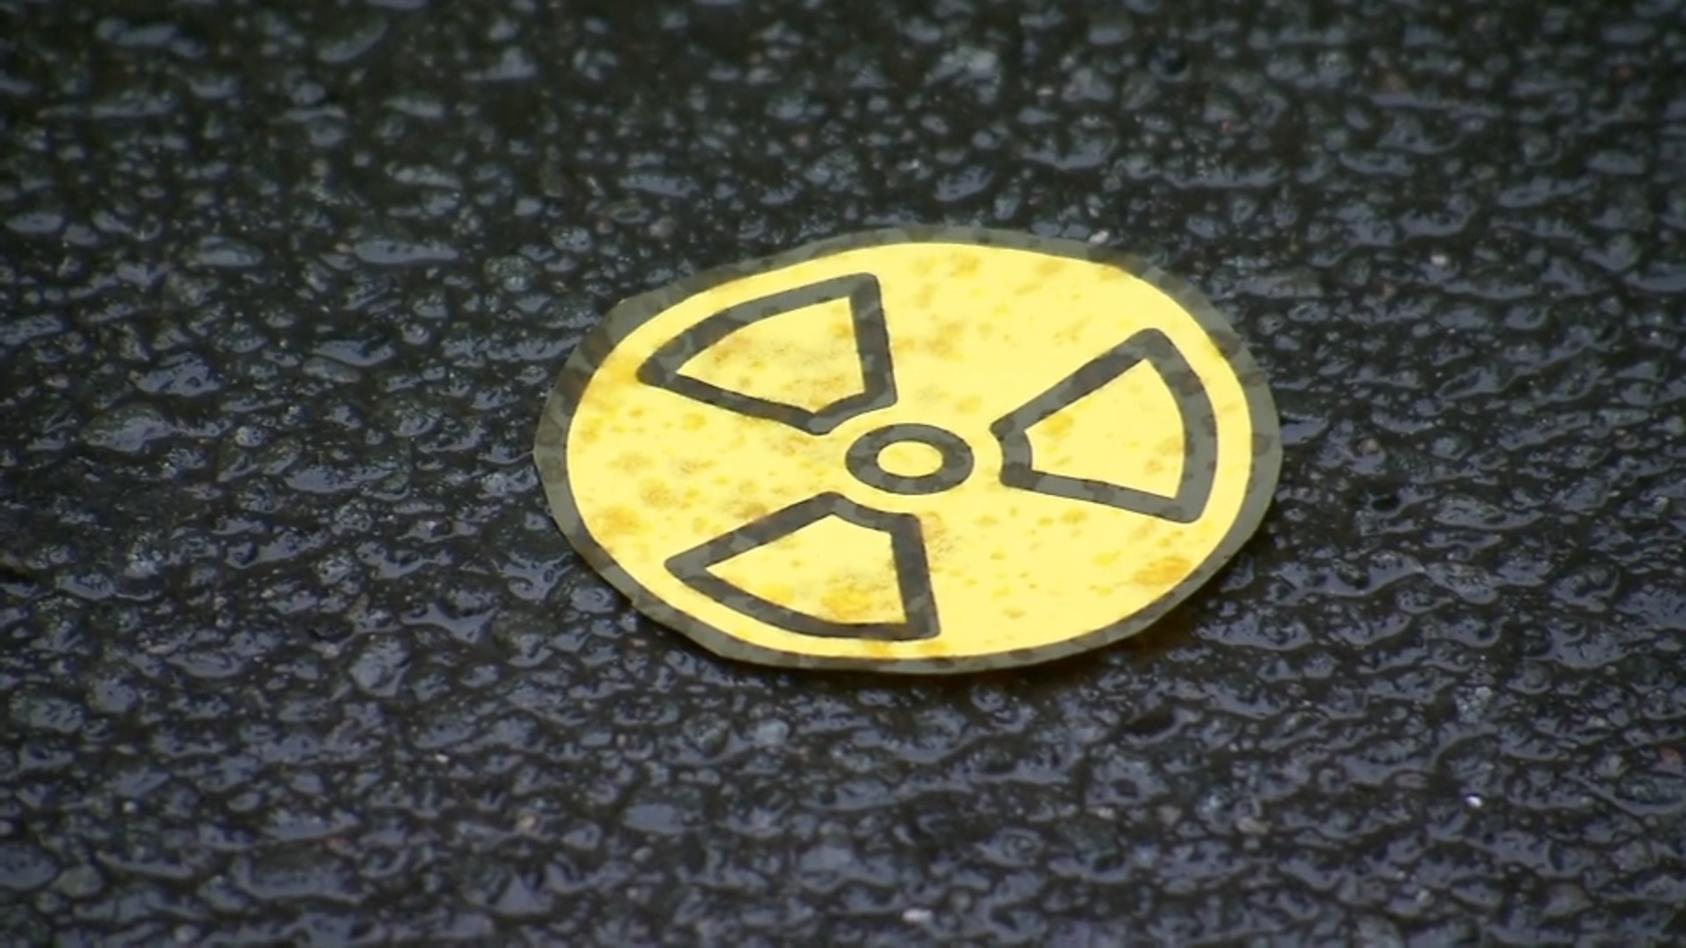 Australien: Vermisste hochradioaktive Kapsel gefunden! Nach tagelanger Suche